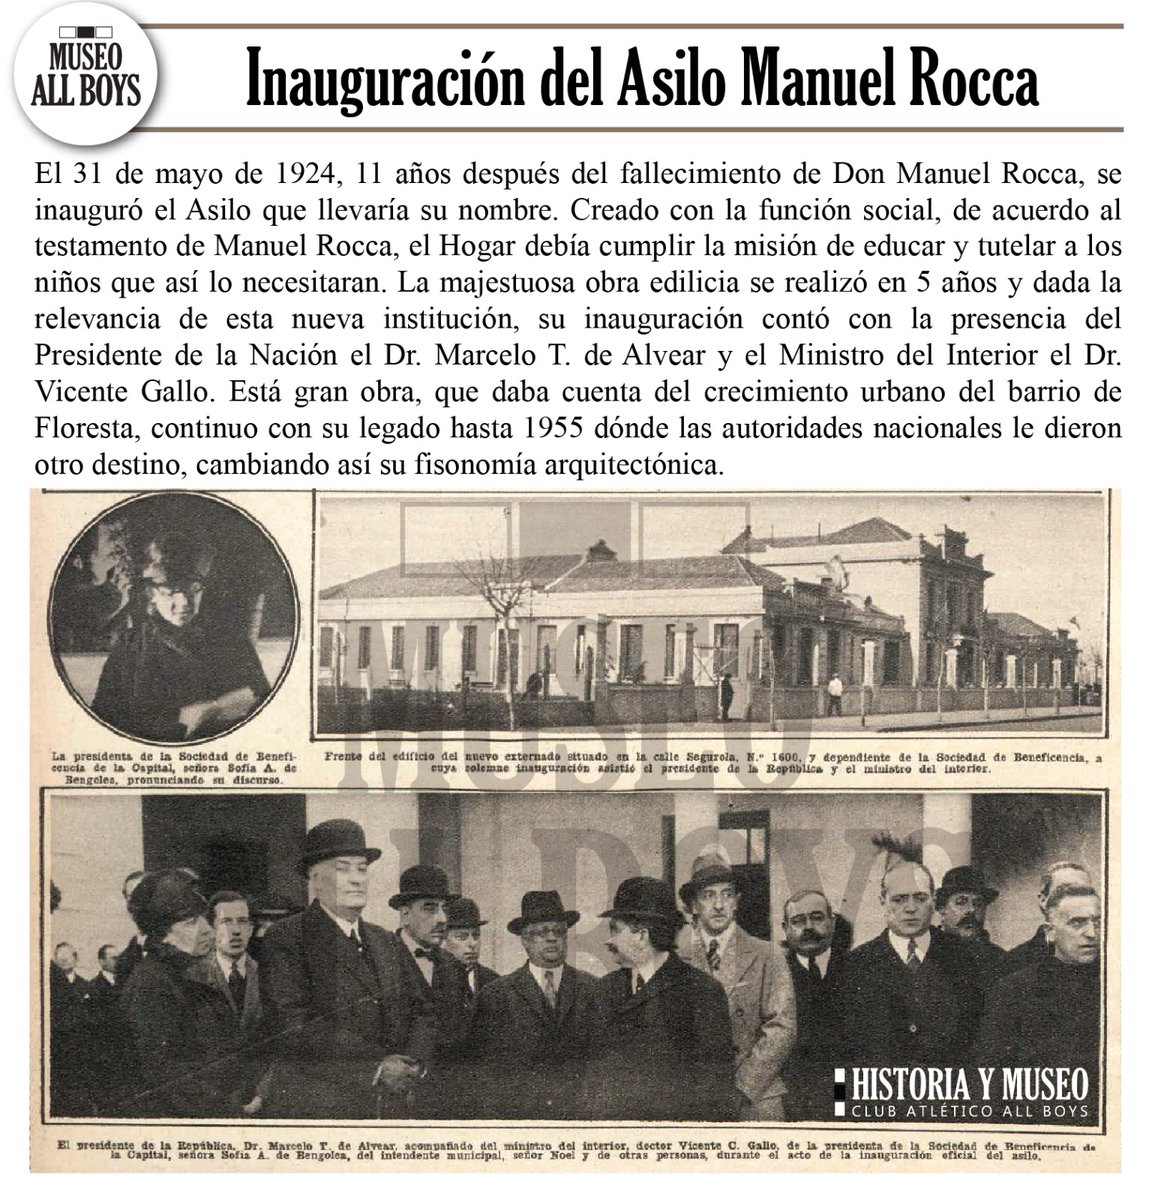 INAUGURACIÓN DEL ASILO MANUEL ROCCA
El 31 de mayo de 1924, 11 años después del fallecimiento de Don Manuel Rocca, se inauguró el Asilo que llevaría su nombre. 

#AllBoys #SoydeAllBoys #HistoriaYMuseoAllBoys #MuseoAllBoys